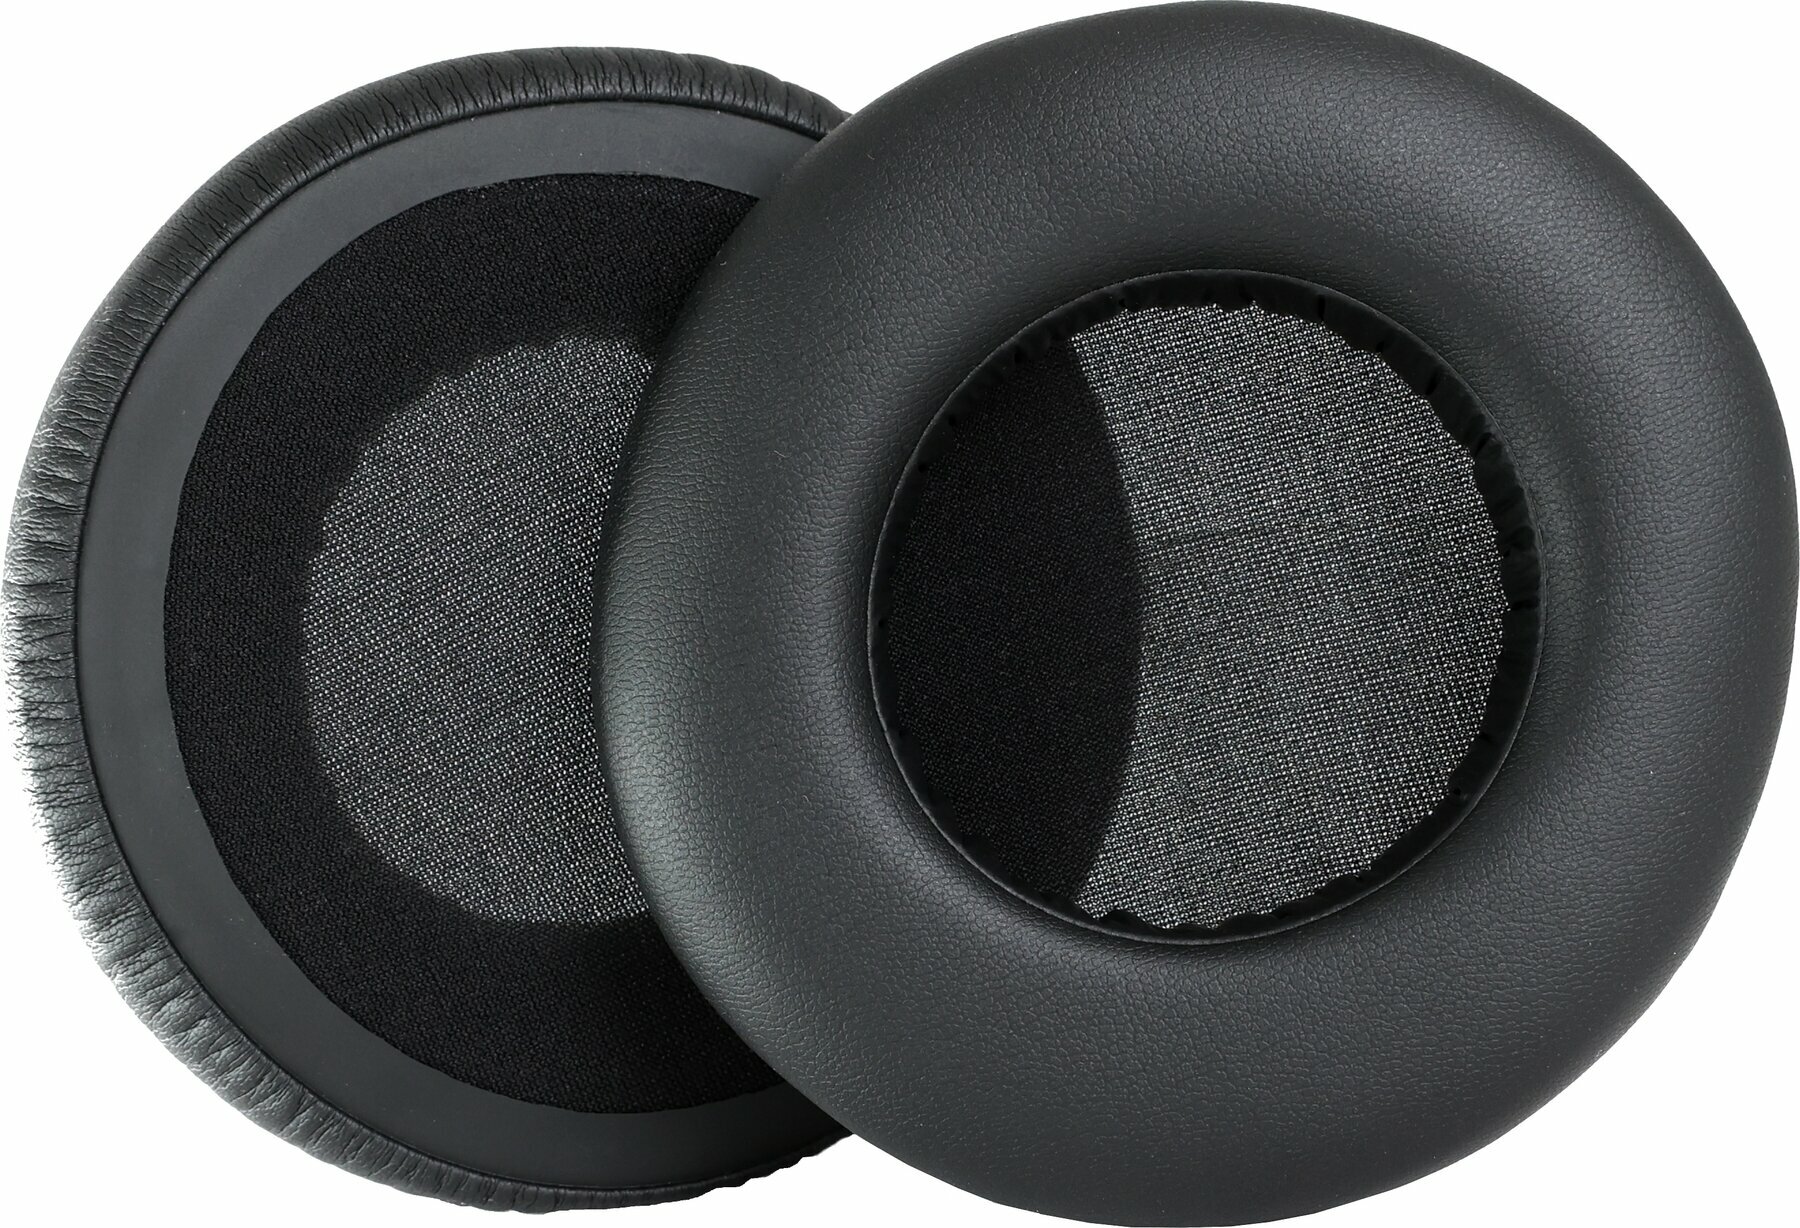 Ear Pads for headphones Veles-X K240MKII Ear Pads for headphones A500/900-K240 MKII-K240S-K242-K550-K551 Black